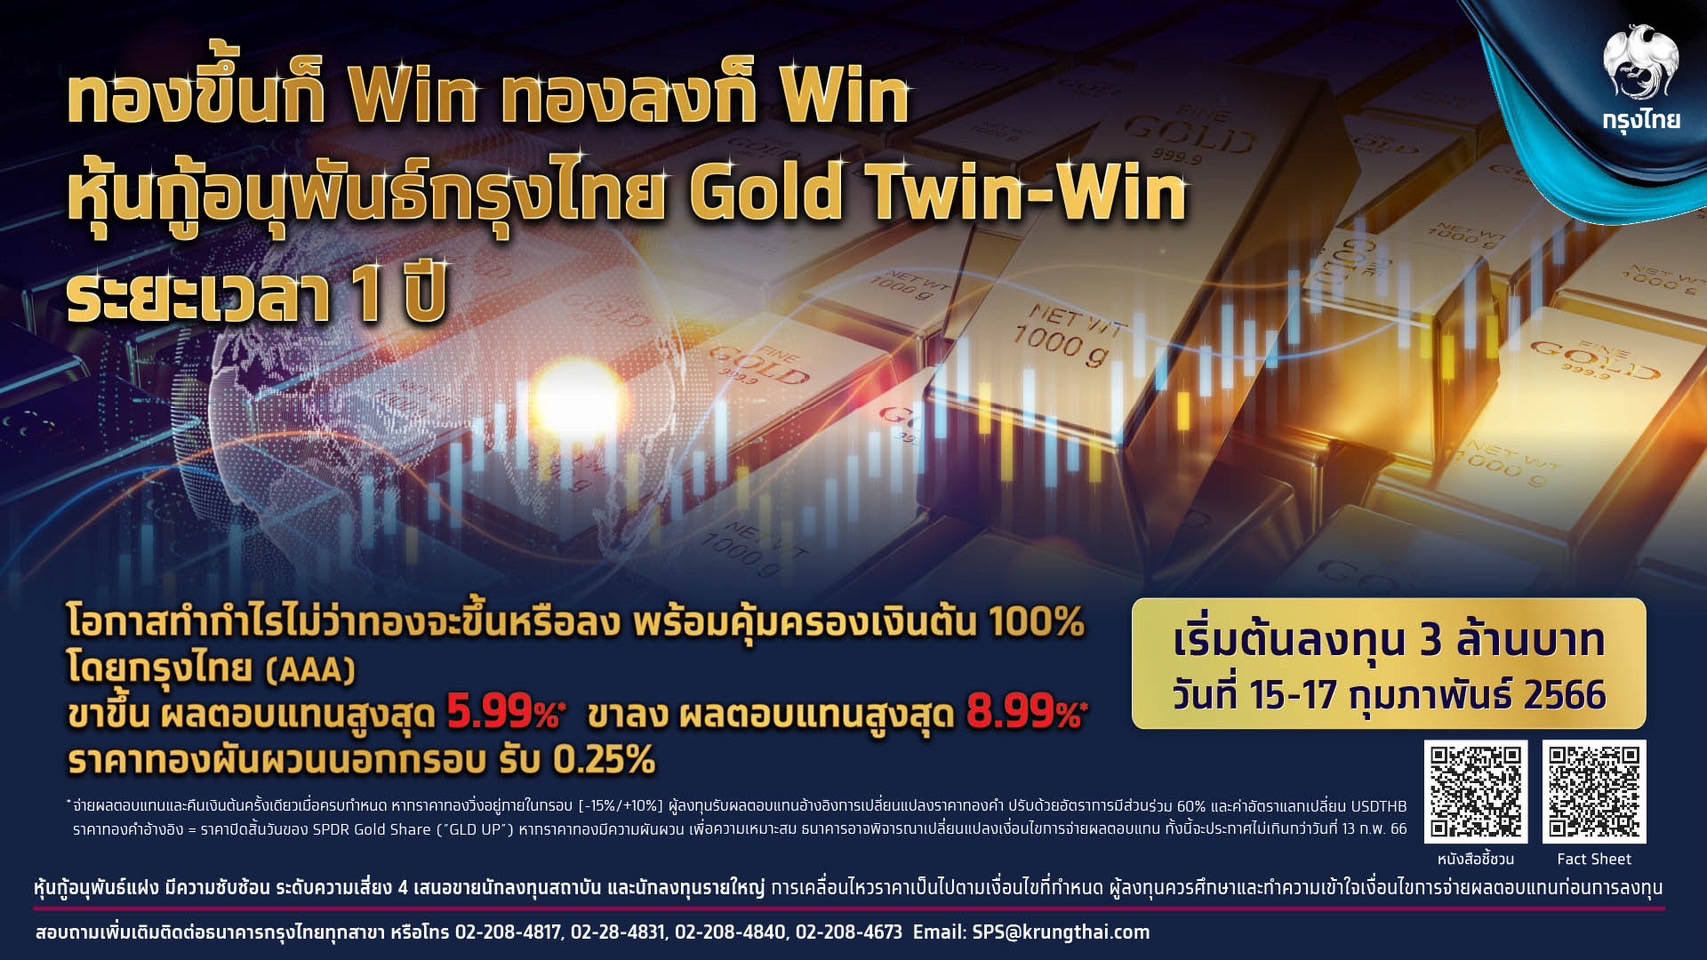 “กรุงไทย” เอาใจนักลงทุนทอง เสนอขายหุ้นกู้อนุพันธ์ “Gold Twin-Win” เปิดโอกาสสร้างผลตอบแทนไม่ว่าราคาทองจะเป็นขาขึ้นหรือขาลง รับผลตอบแทนสูงสุด 8.99% พร้อมคุ้มครองเงินต้น 100% โดยธนาคารกรุงไทย